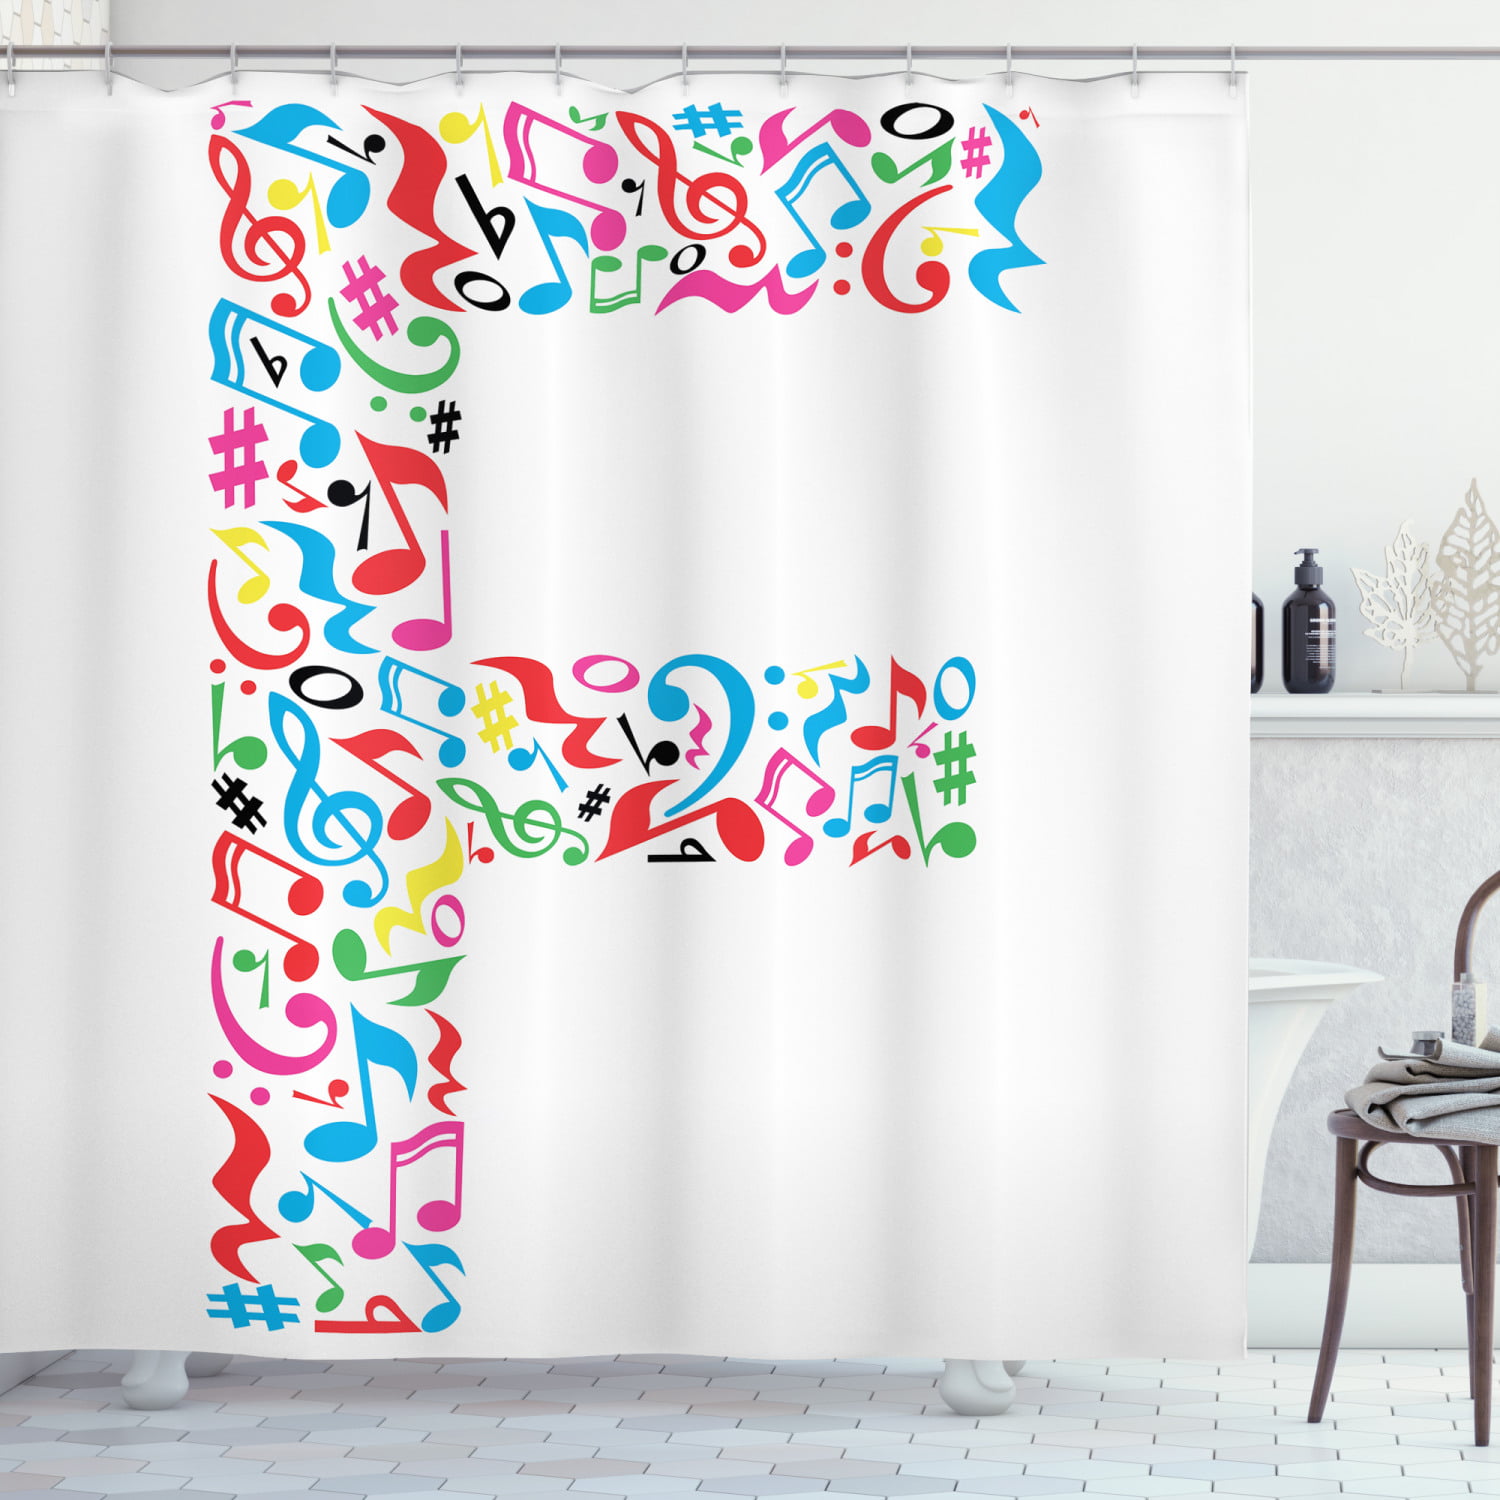 72" 72" Bath Mat & Bathroom Fabric Shower Curtain 12 Hooks ABC letters Decor NEw 